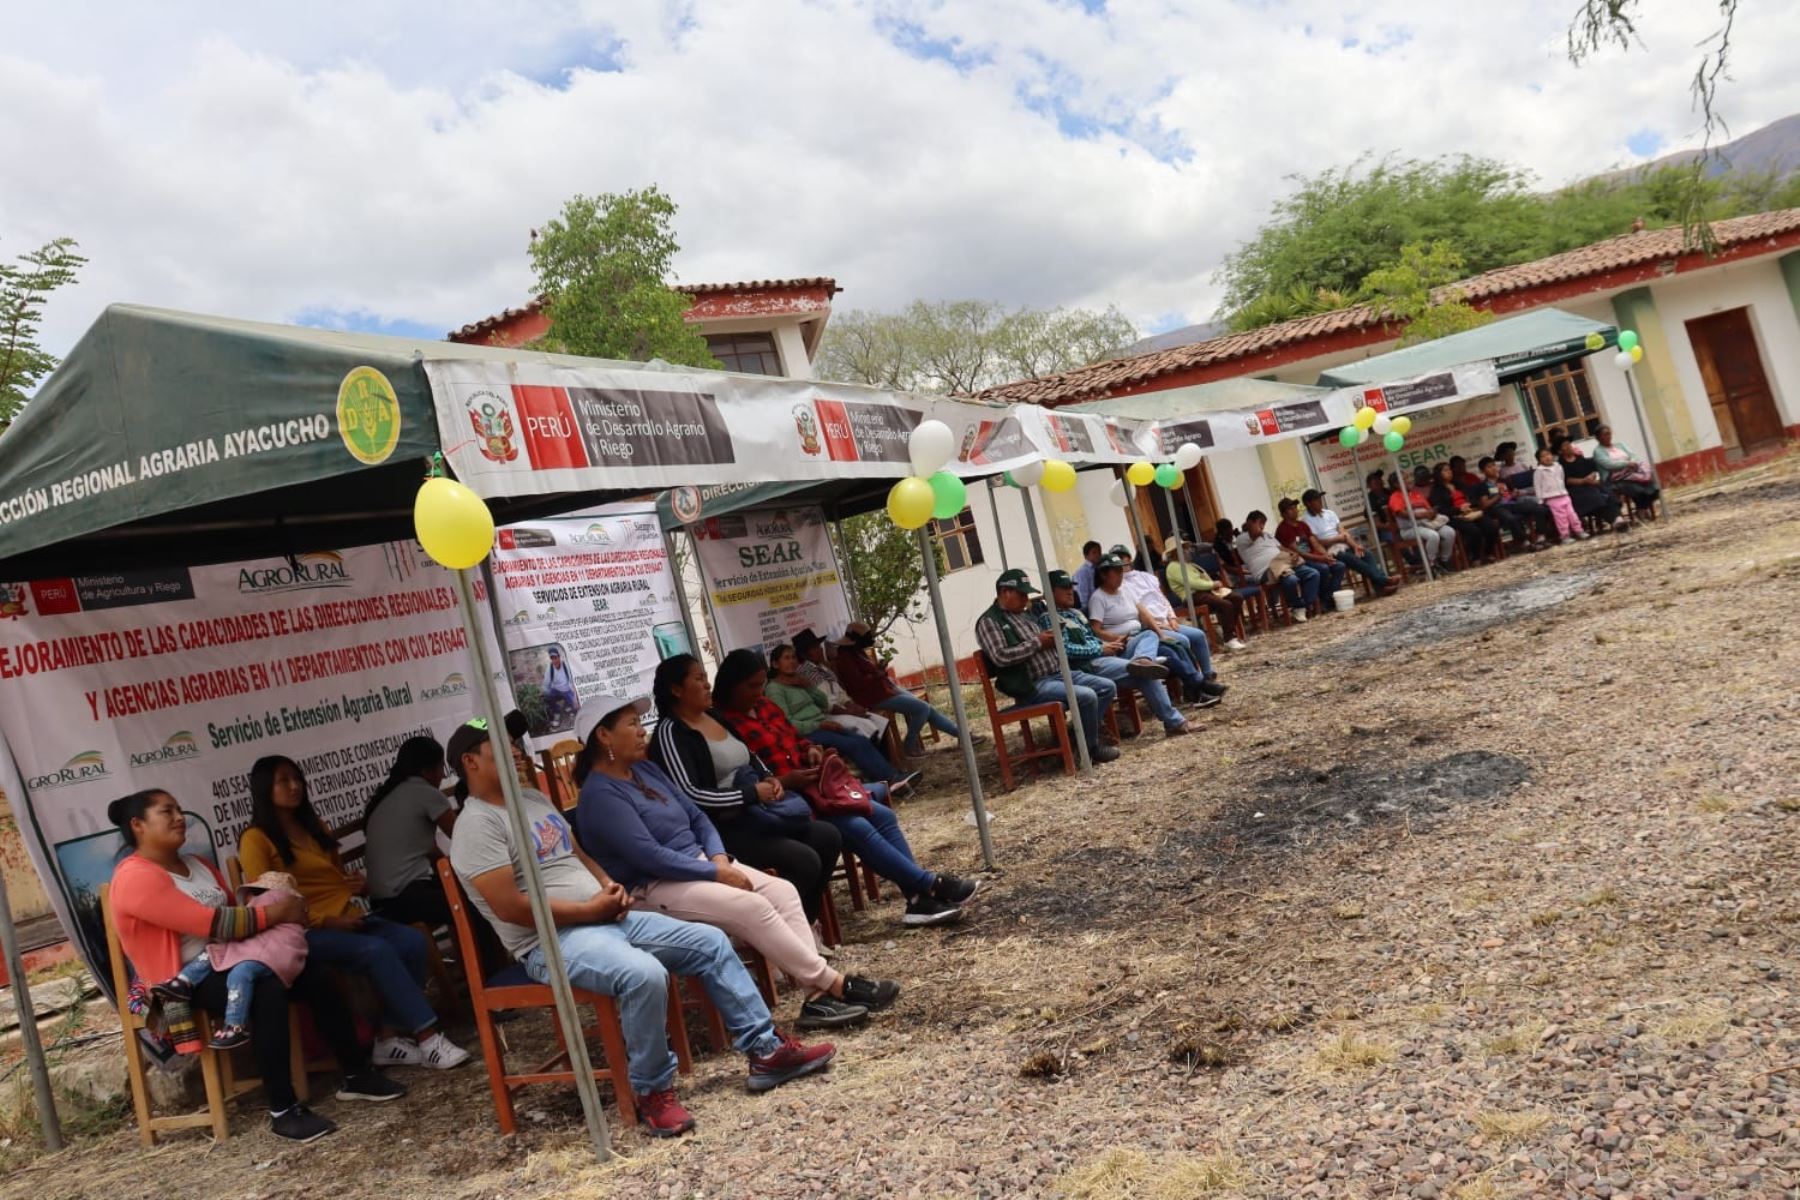 Agro Rural, presentó los resultados exitosos del IV Concurso SEAR 2022 (Servicios de Extensión Agraria Rural), en las regiones de Arequipa, Ayacucho, Apurímac y Huancavelica. Foto: Cortesía.